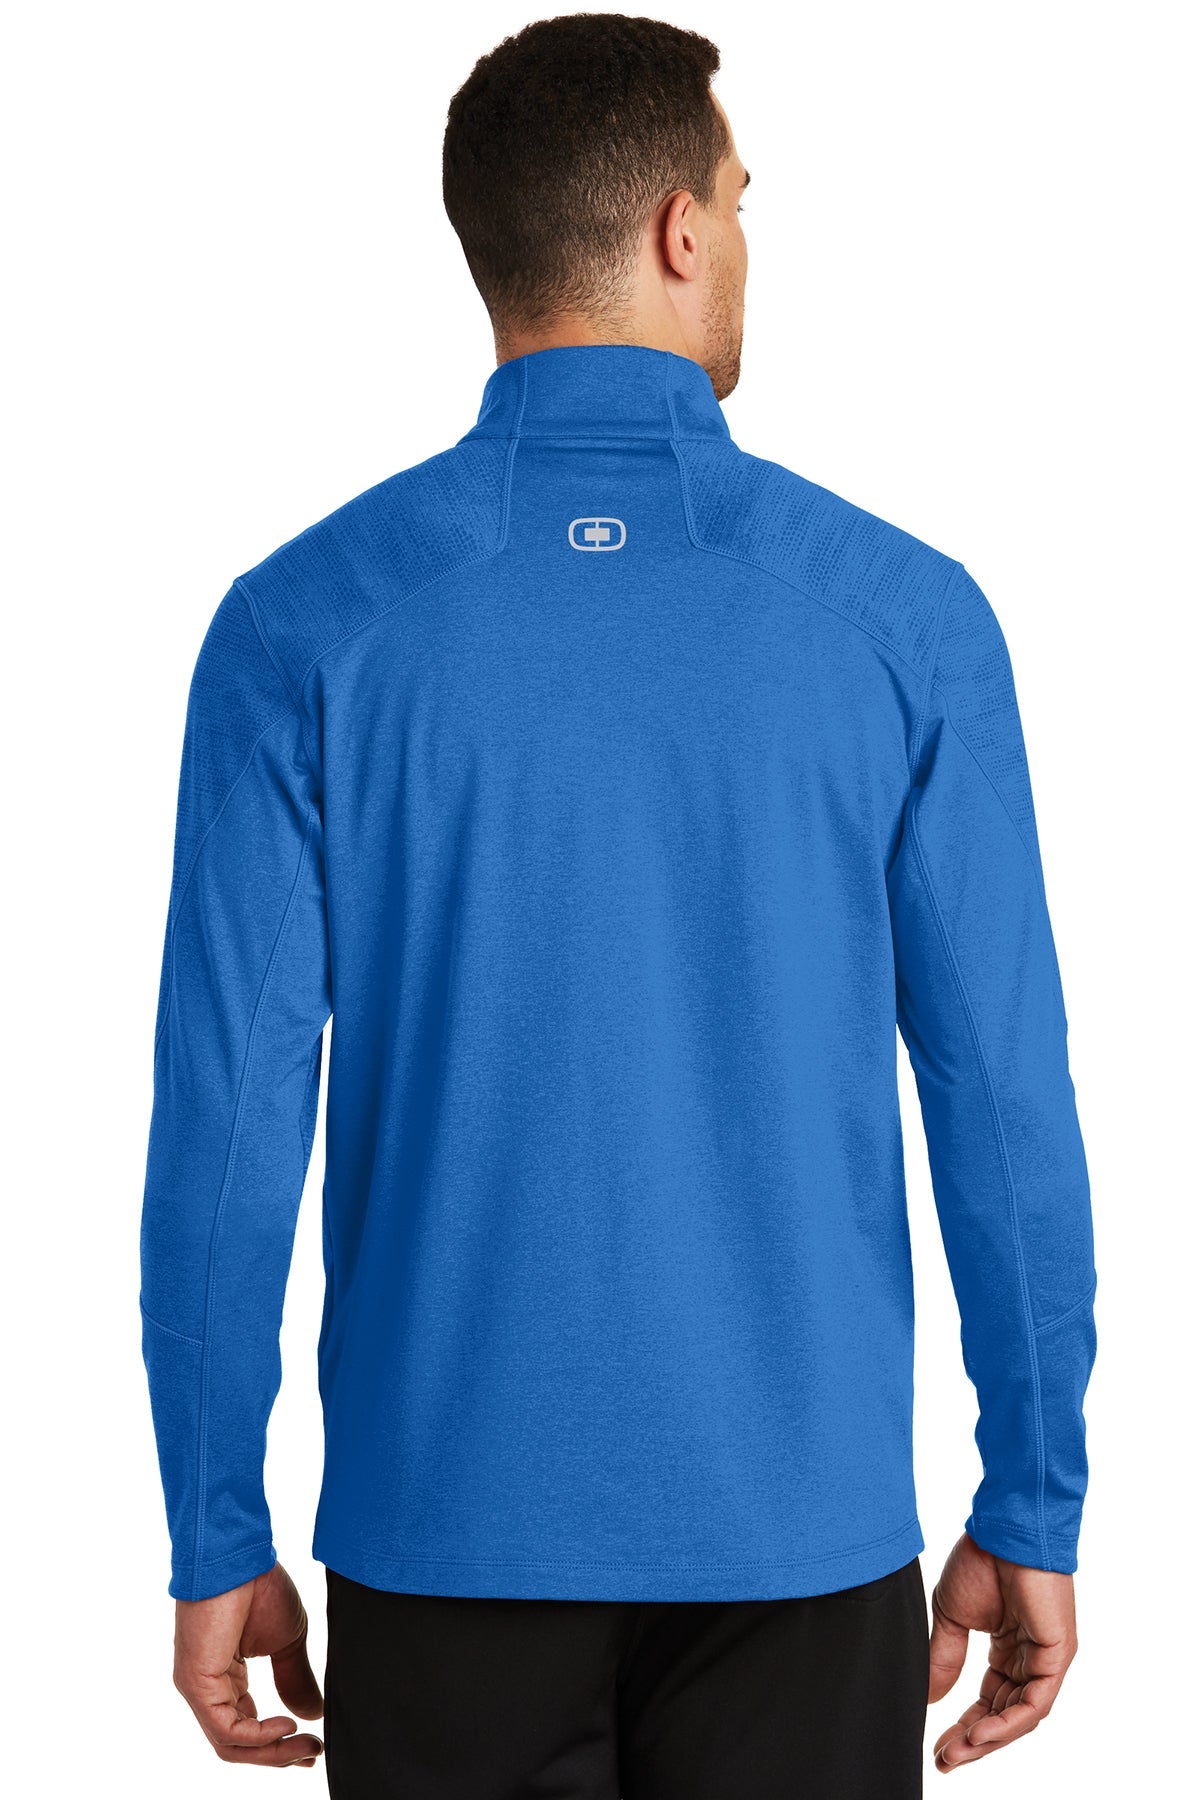 ogio endurance_oe702 _electric blue heather_company_logo_jackets